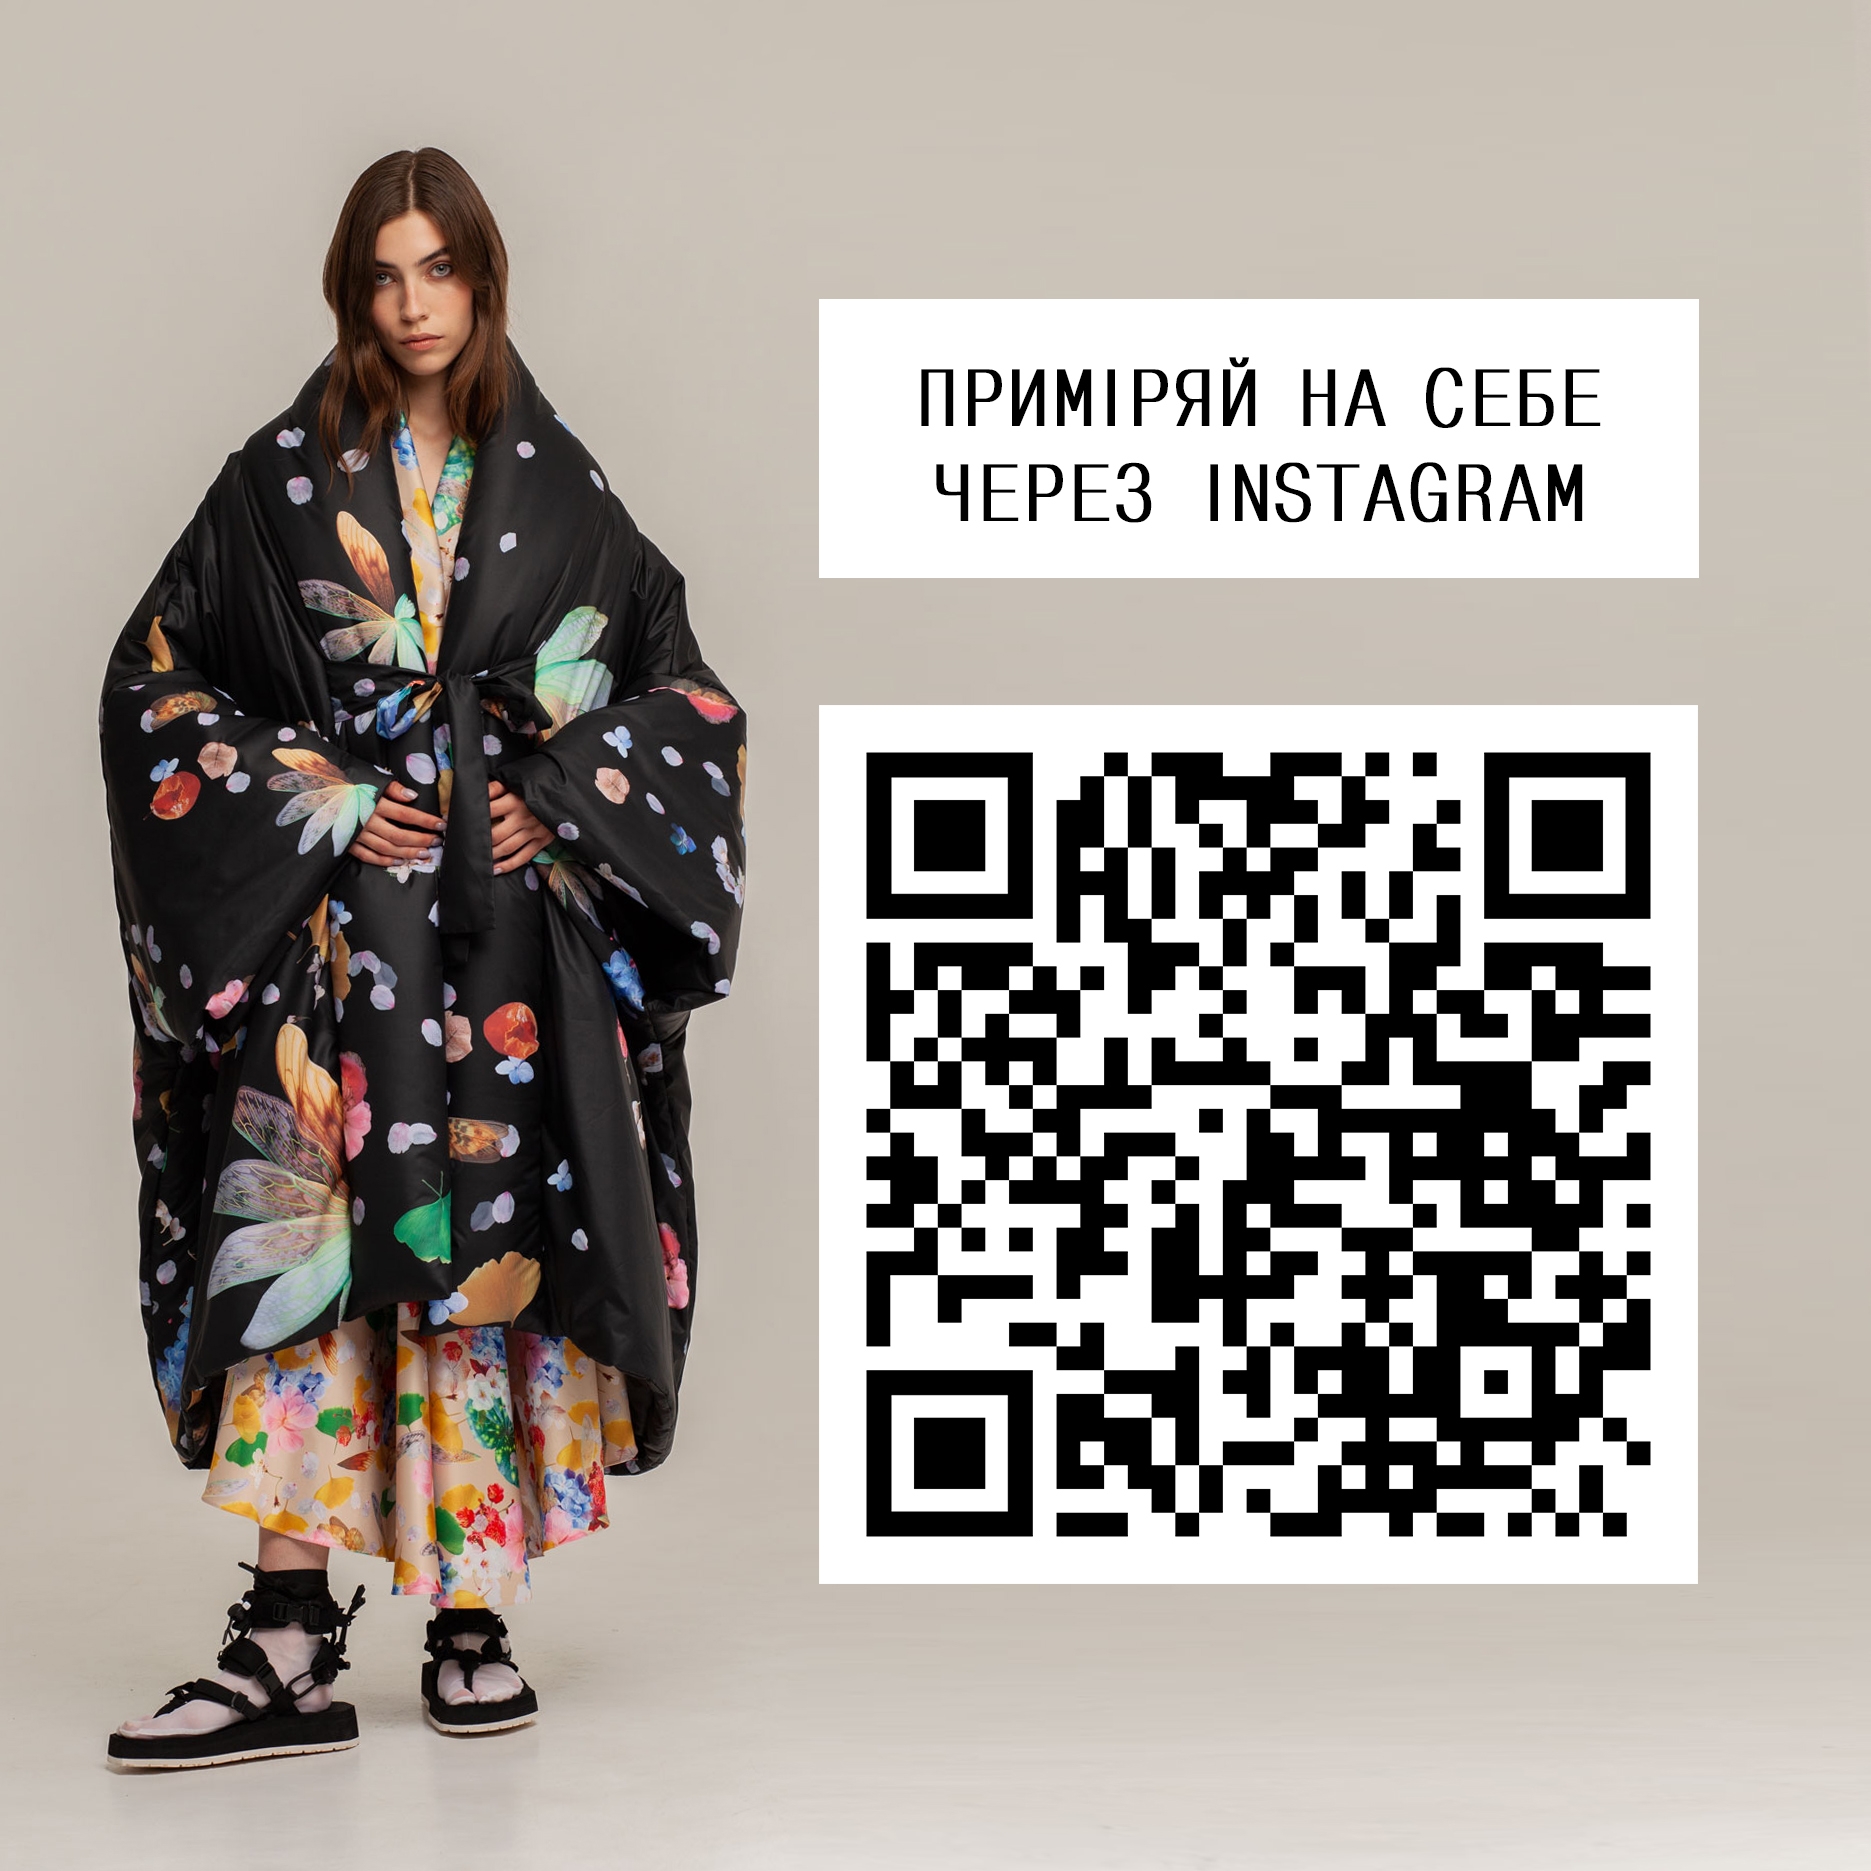 Український бренд одягу FINCH представляє лукбук першого в світі імерсивного модного шоу - фото №3